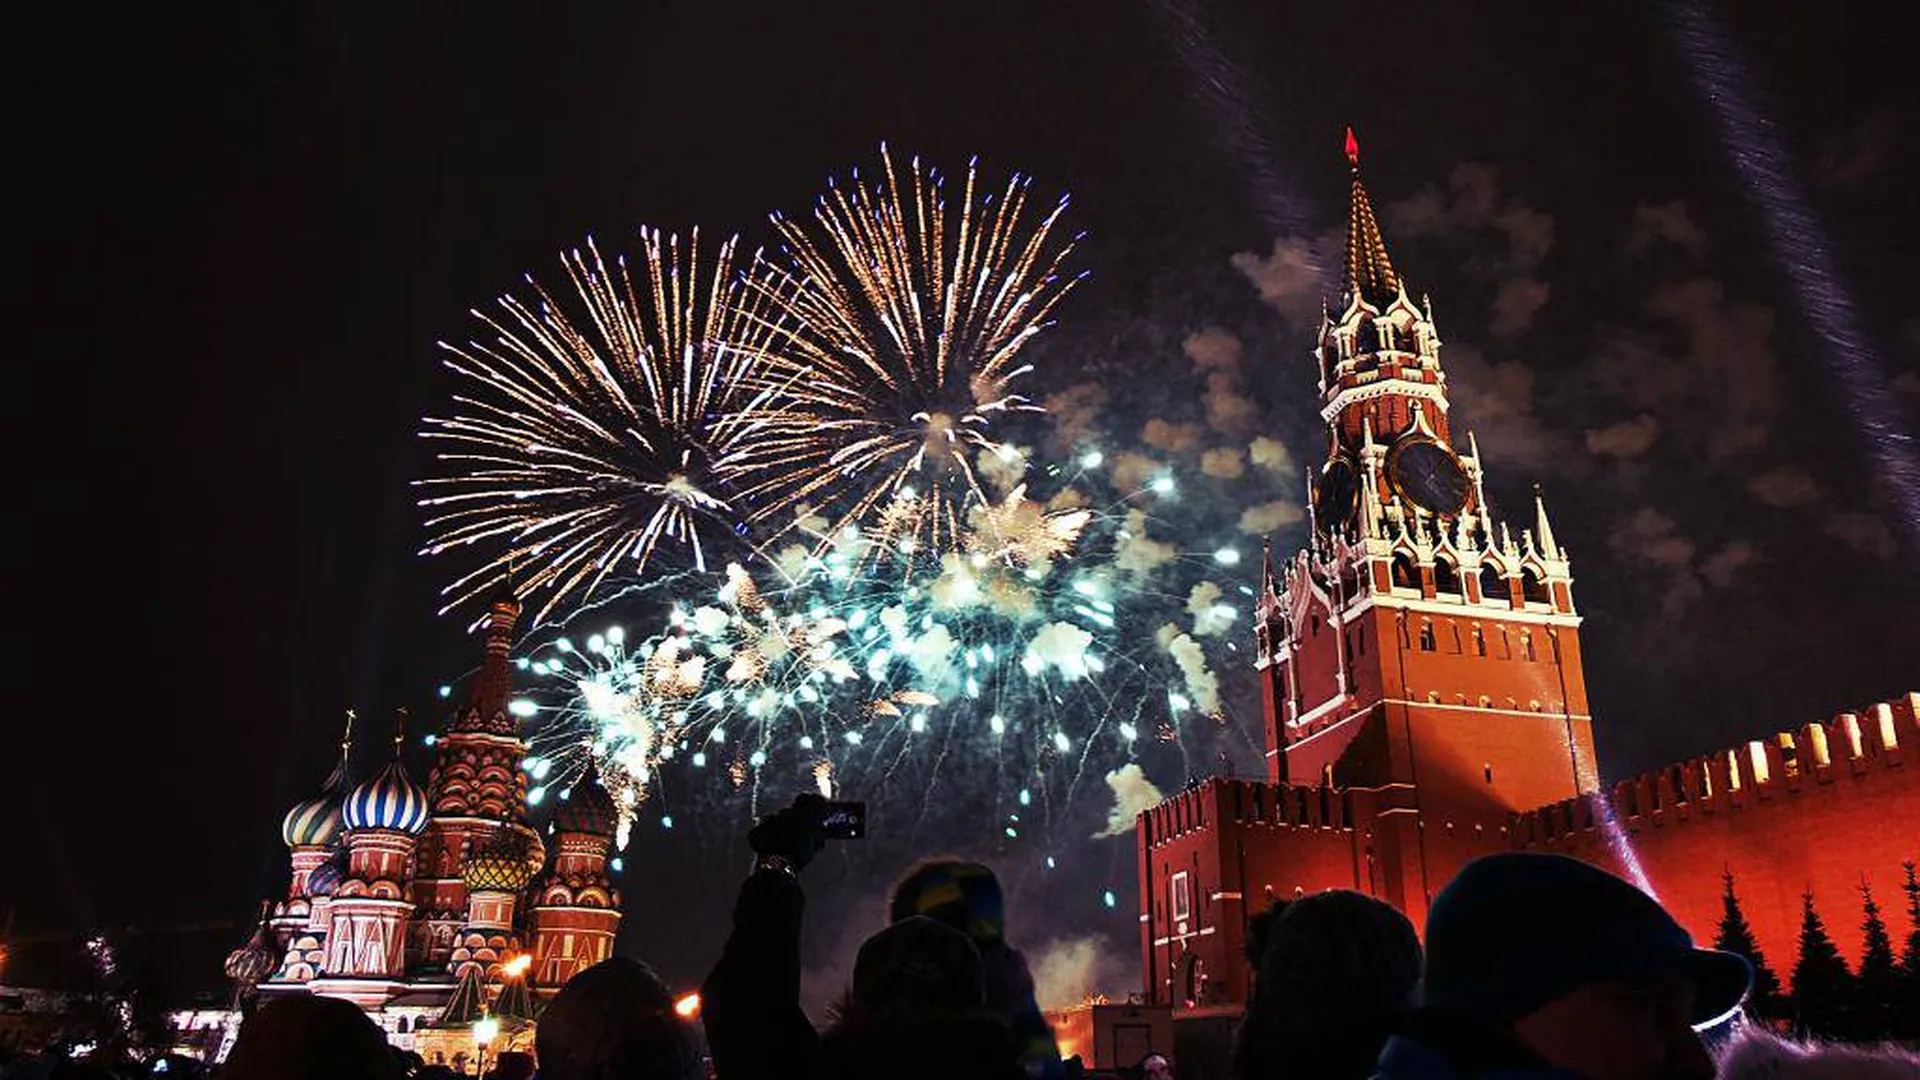 Образование нового года в россии